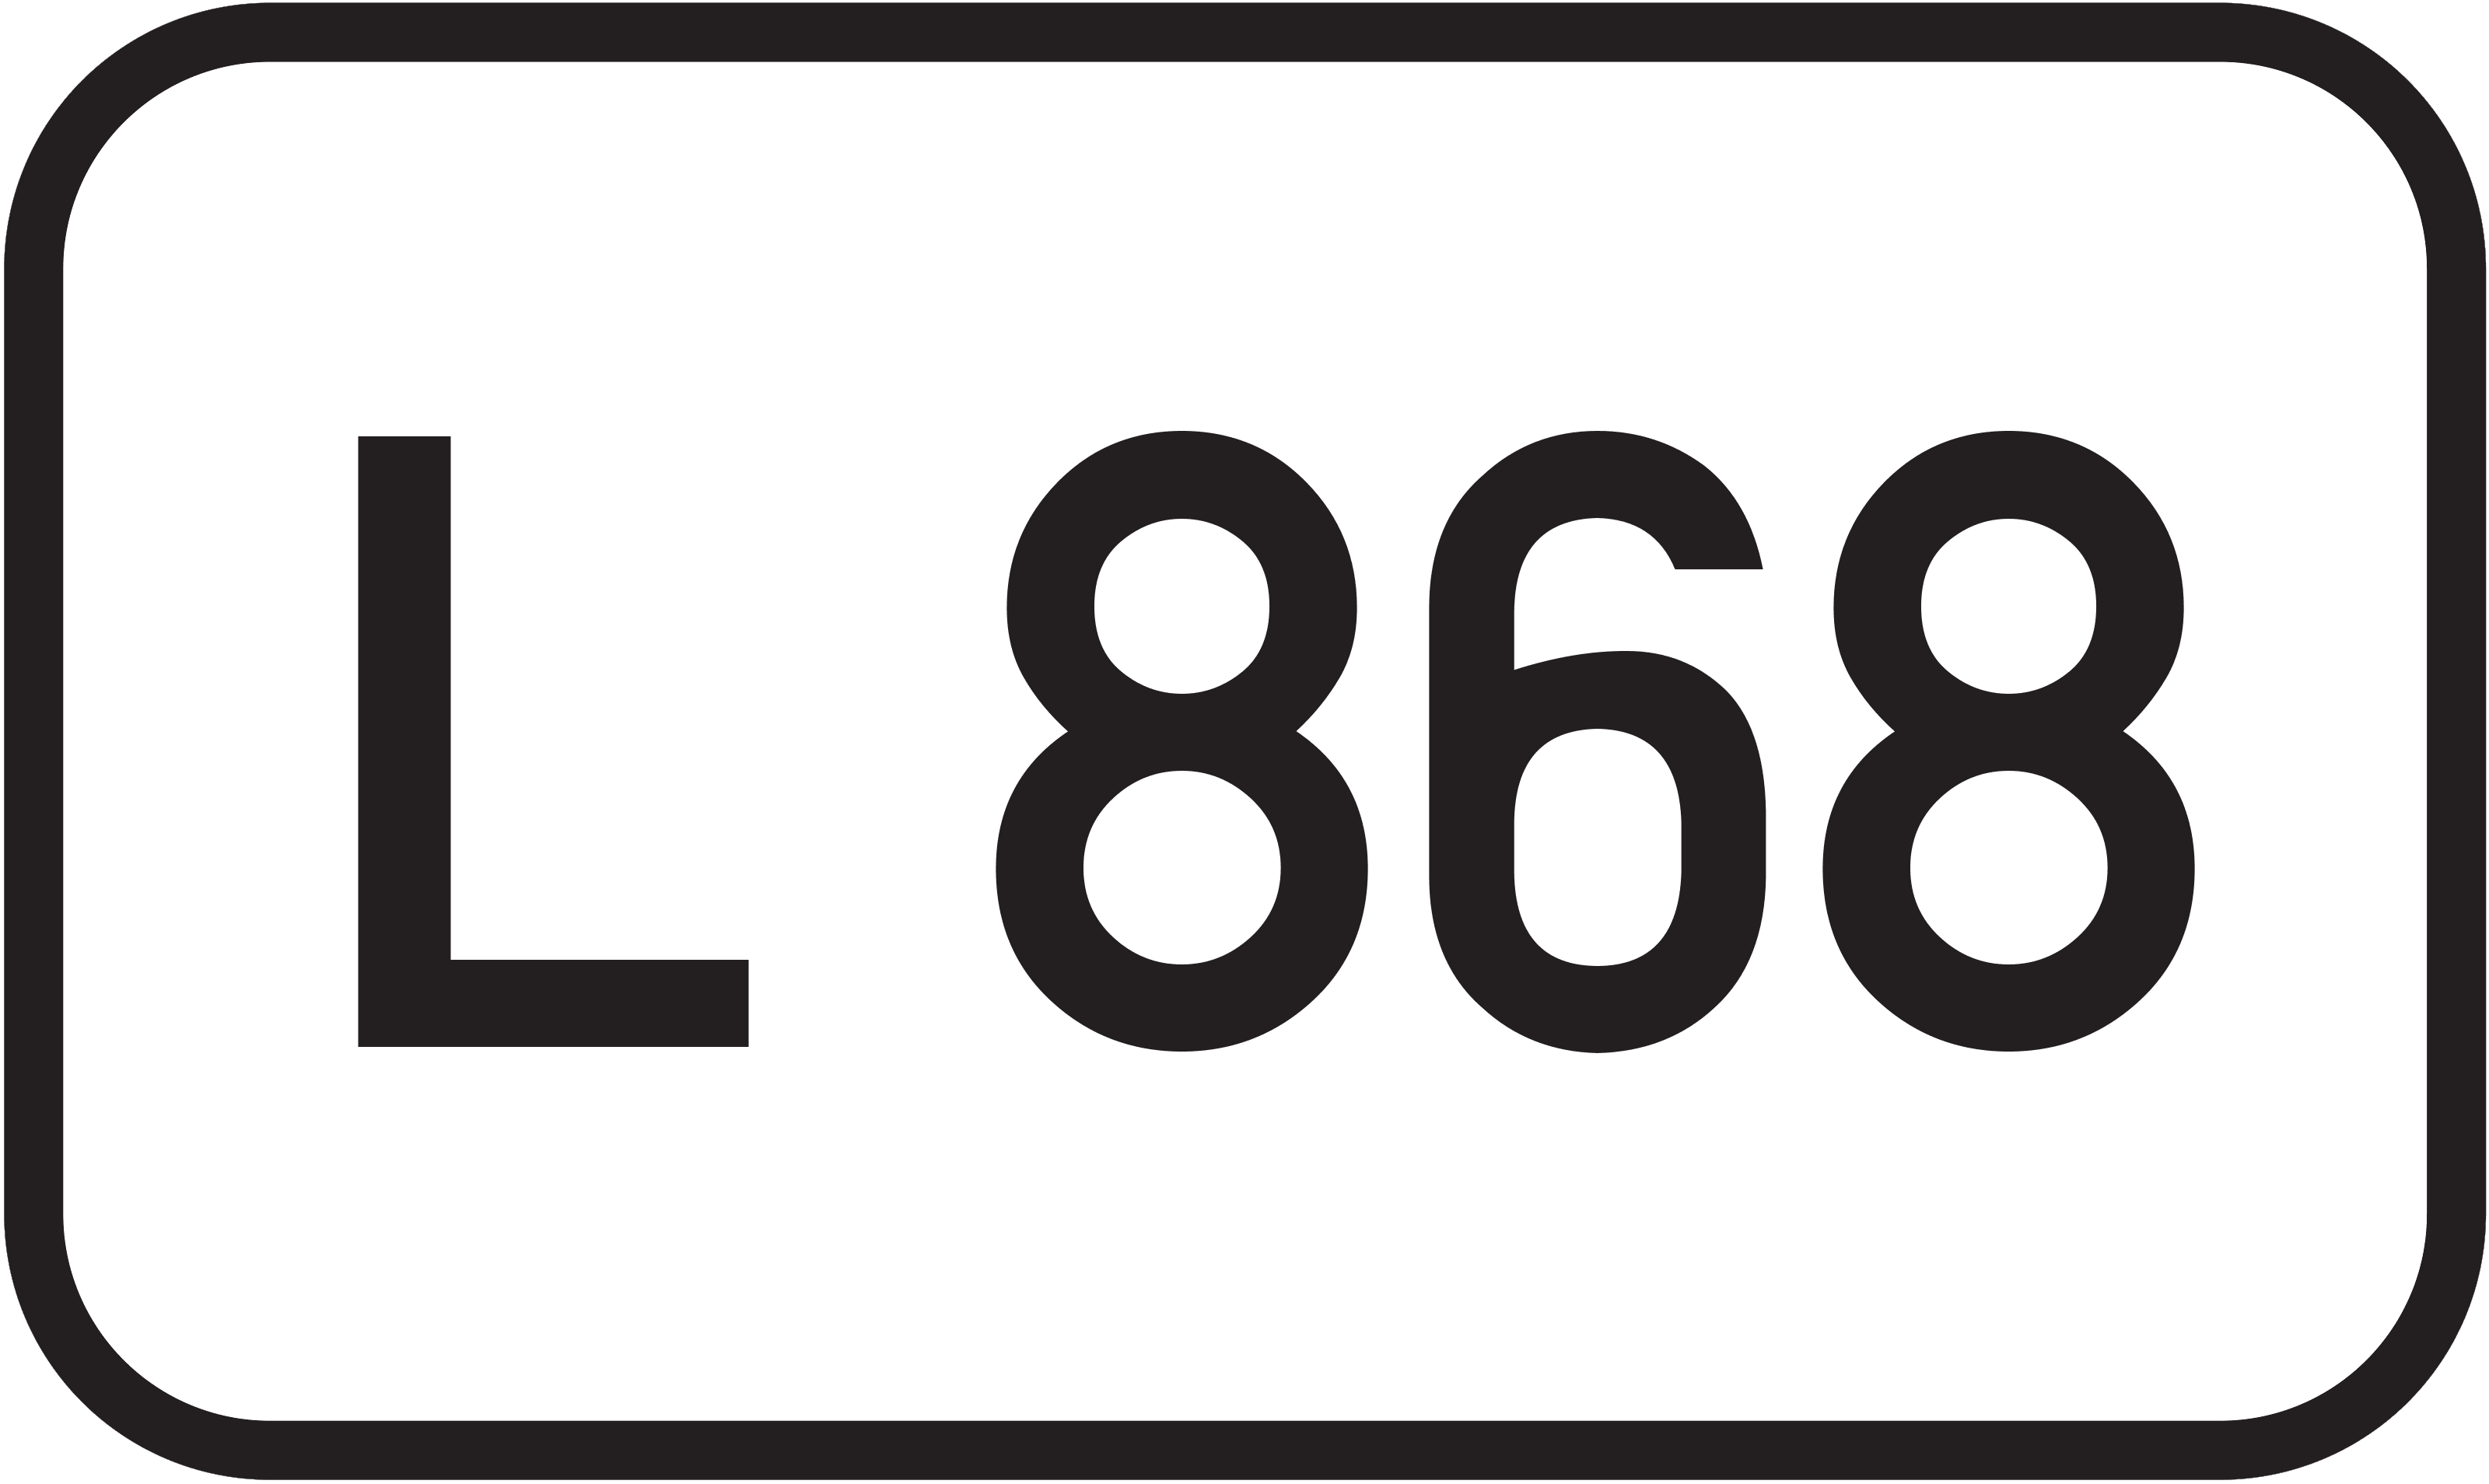 Landesstraße L 868